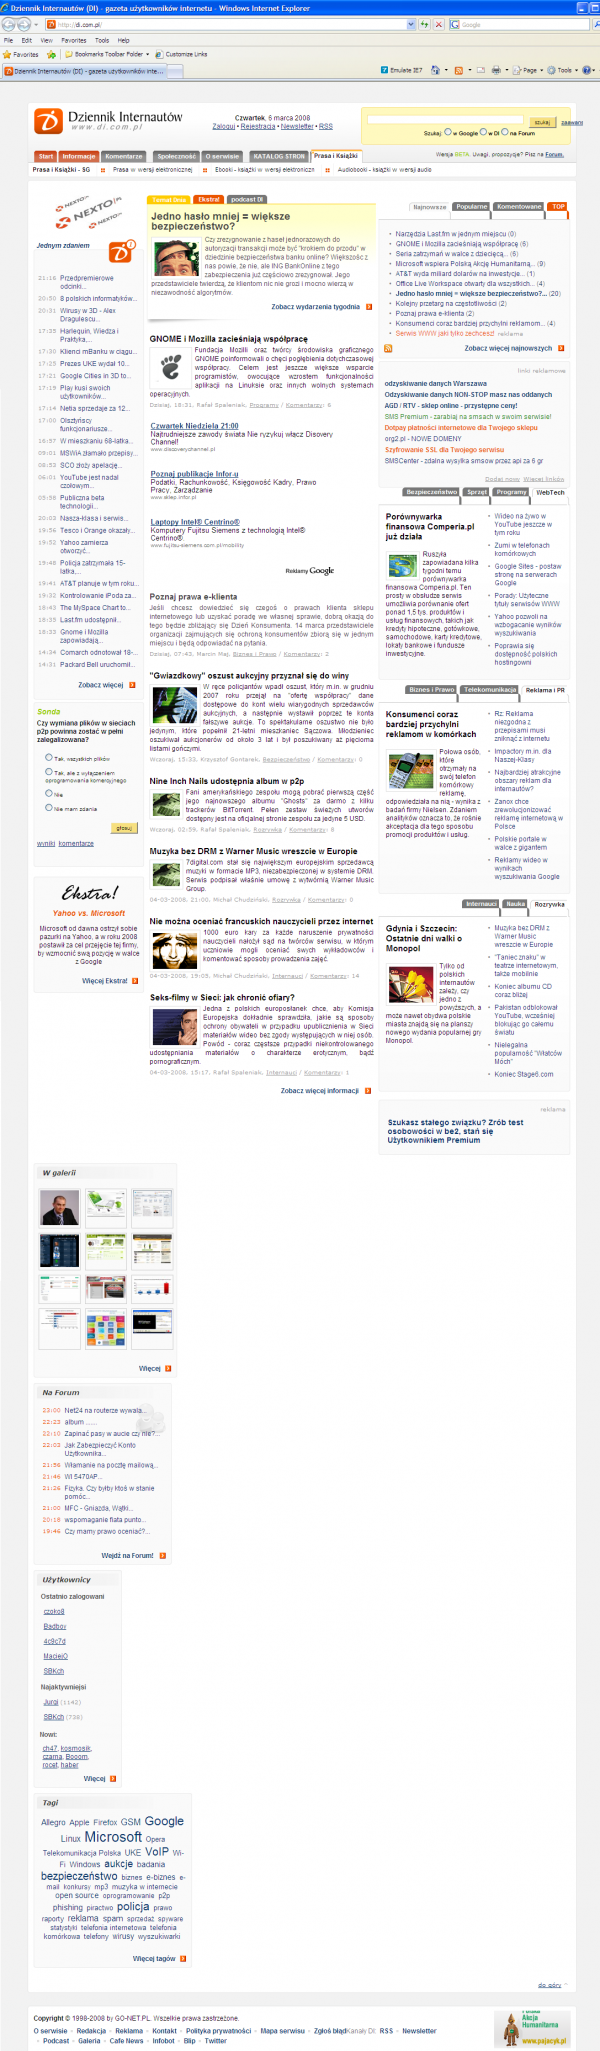 Dziennik Internautów w przeglądarce Internet Explorer 8 Beta 1